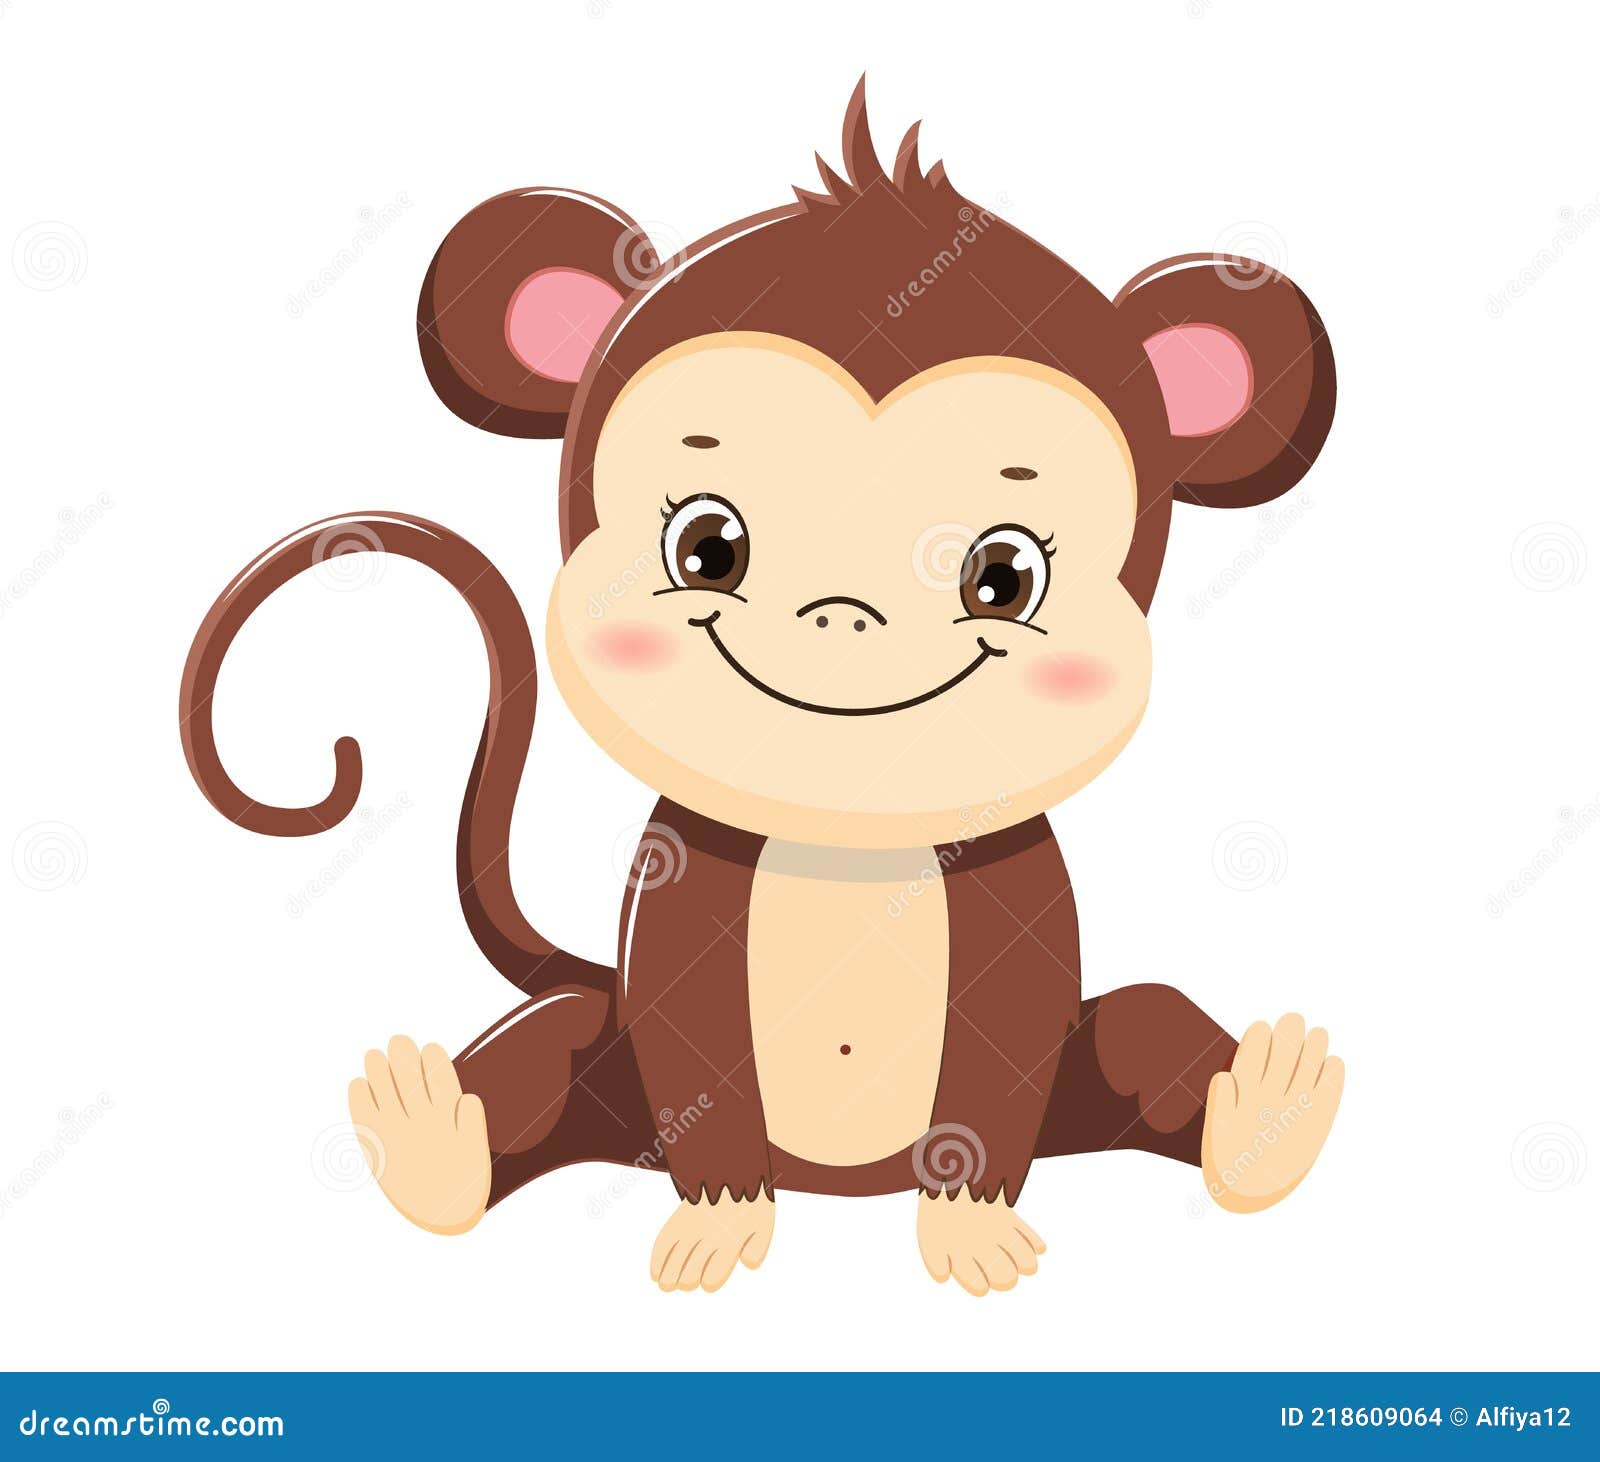 Desenho De Macaco Para Colorir Isolado Crianças Bebê Floresta Fofa Vetor  PNG , Desenho De Floresta, Desenho De Bebê, Desenho De Macaco Imagem PNG e  Vetor Para Download Gratuito